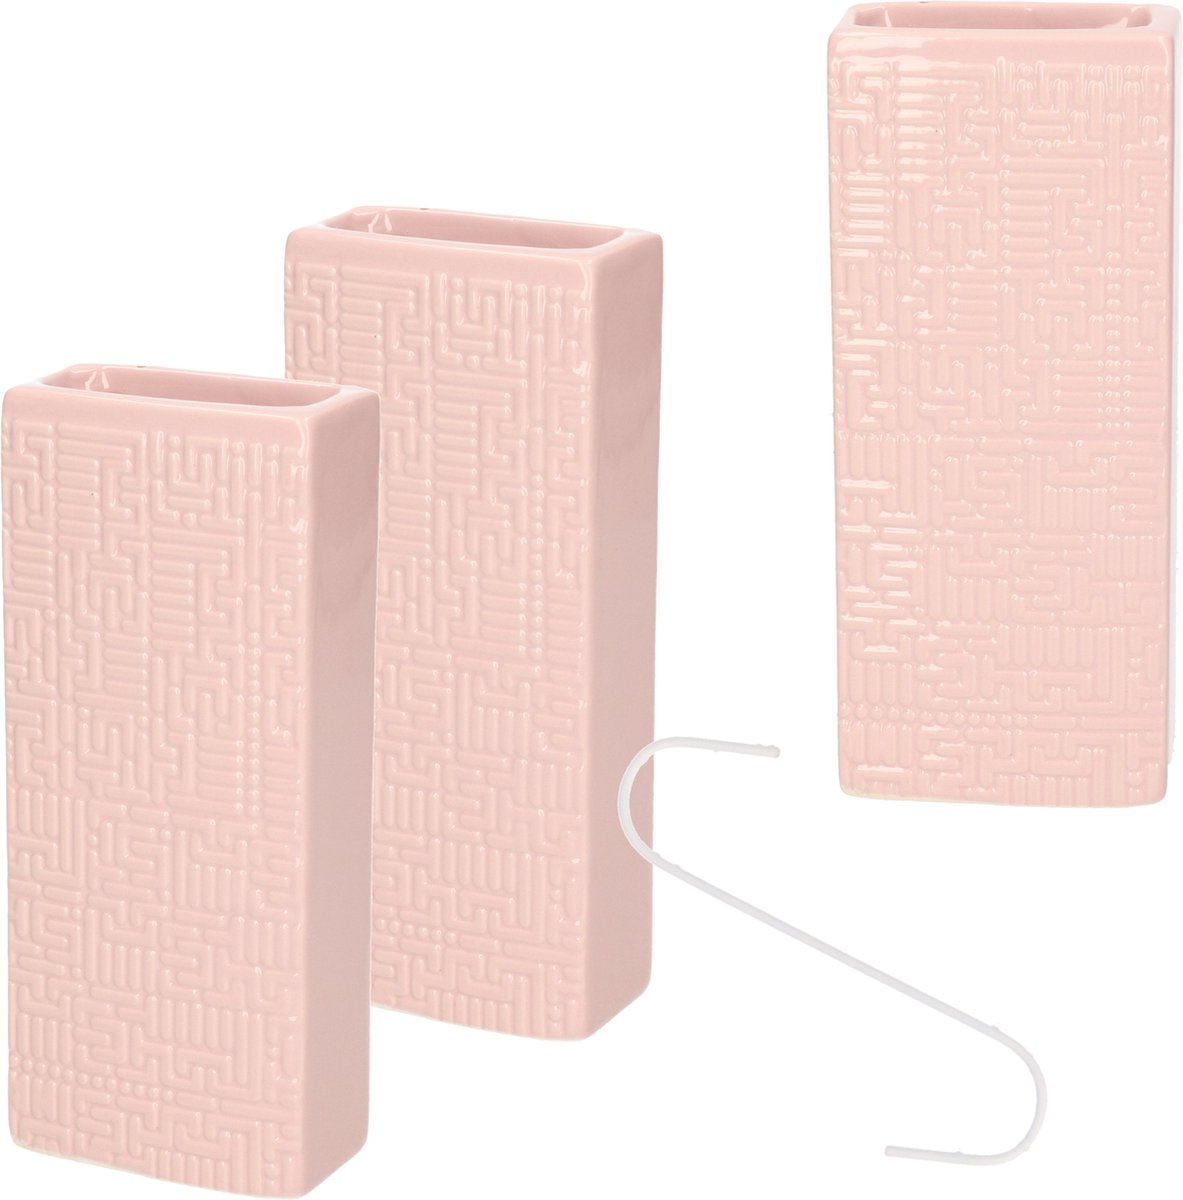 Luchtbevochtigers - 3 stuks - roze - aardewerk - 7,5 x 17,5 cm